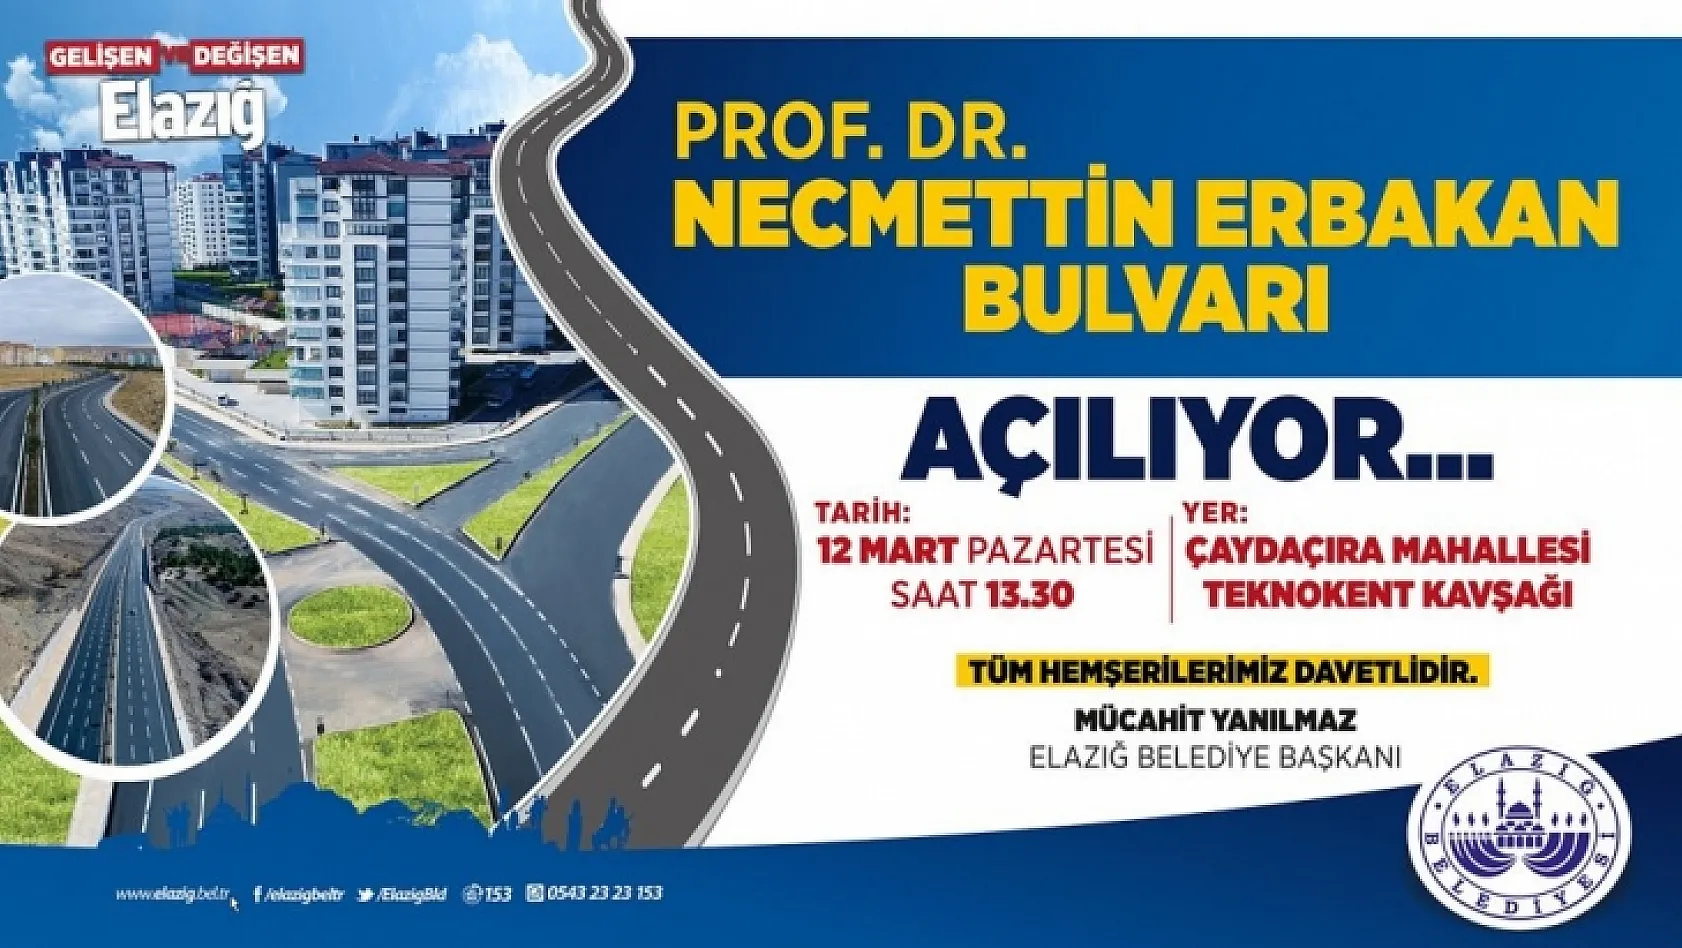 Erbakan Elazığ'a Geliyor